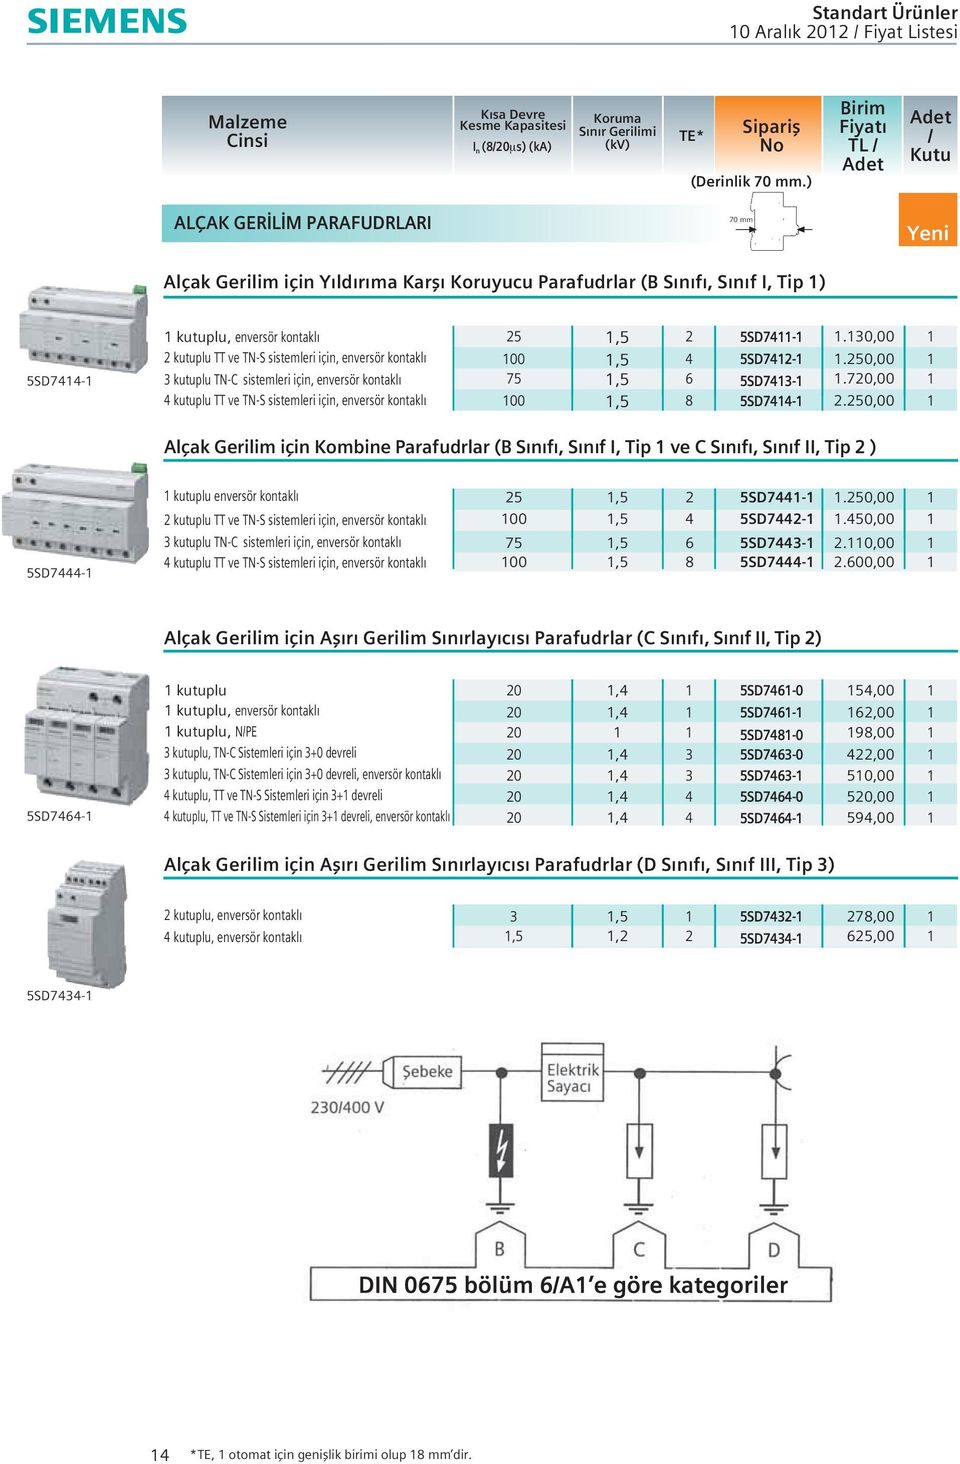 enversör kontakl kutuplu TN sistemleri için, enversör kontakl kutuplu TT ve TNS sistemleri için, enversör kontakl,5 2 5SD7.0,00 00,5 5SD72.0,00 75 00,5,5 8 5SD7 5SD7.7,00 2.